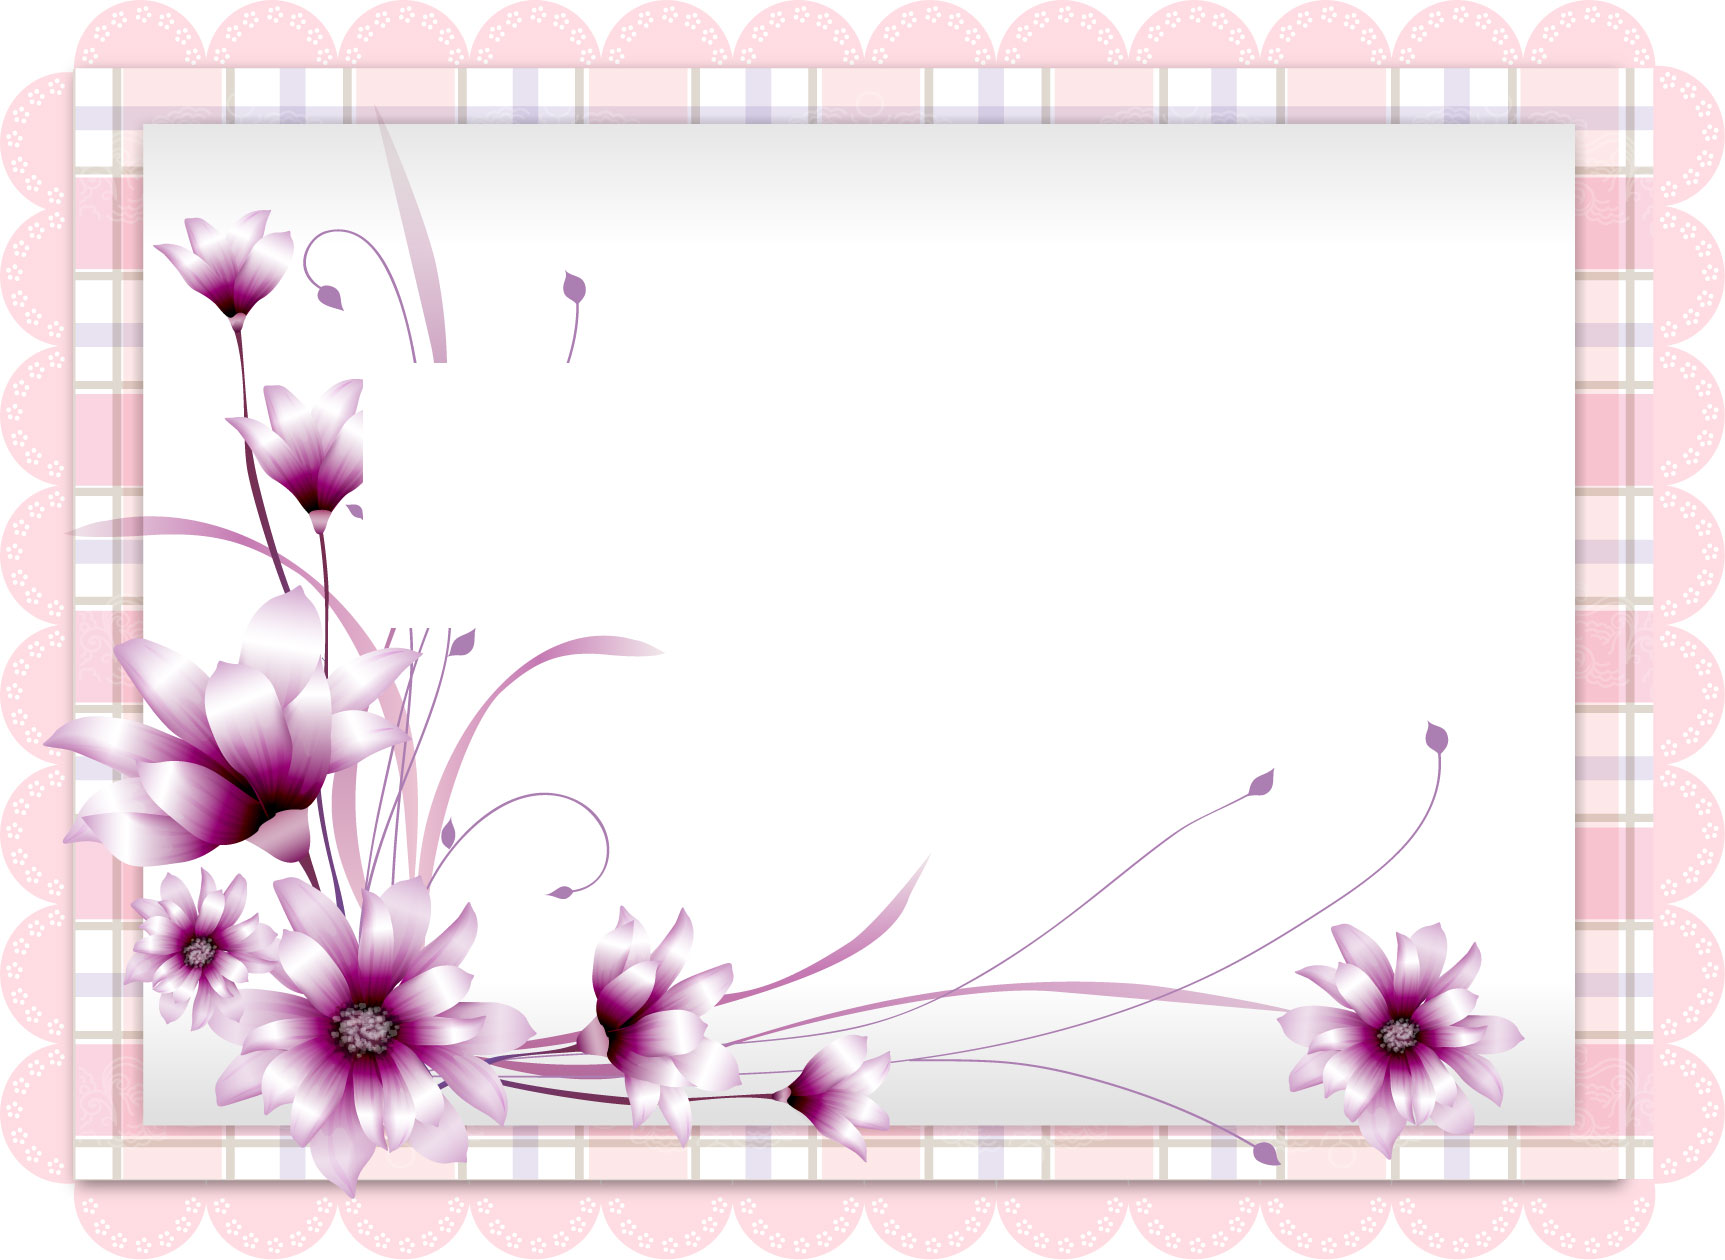 紫色の花のイラスト フリー素材 No 309 紫 ピンクのレース柄